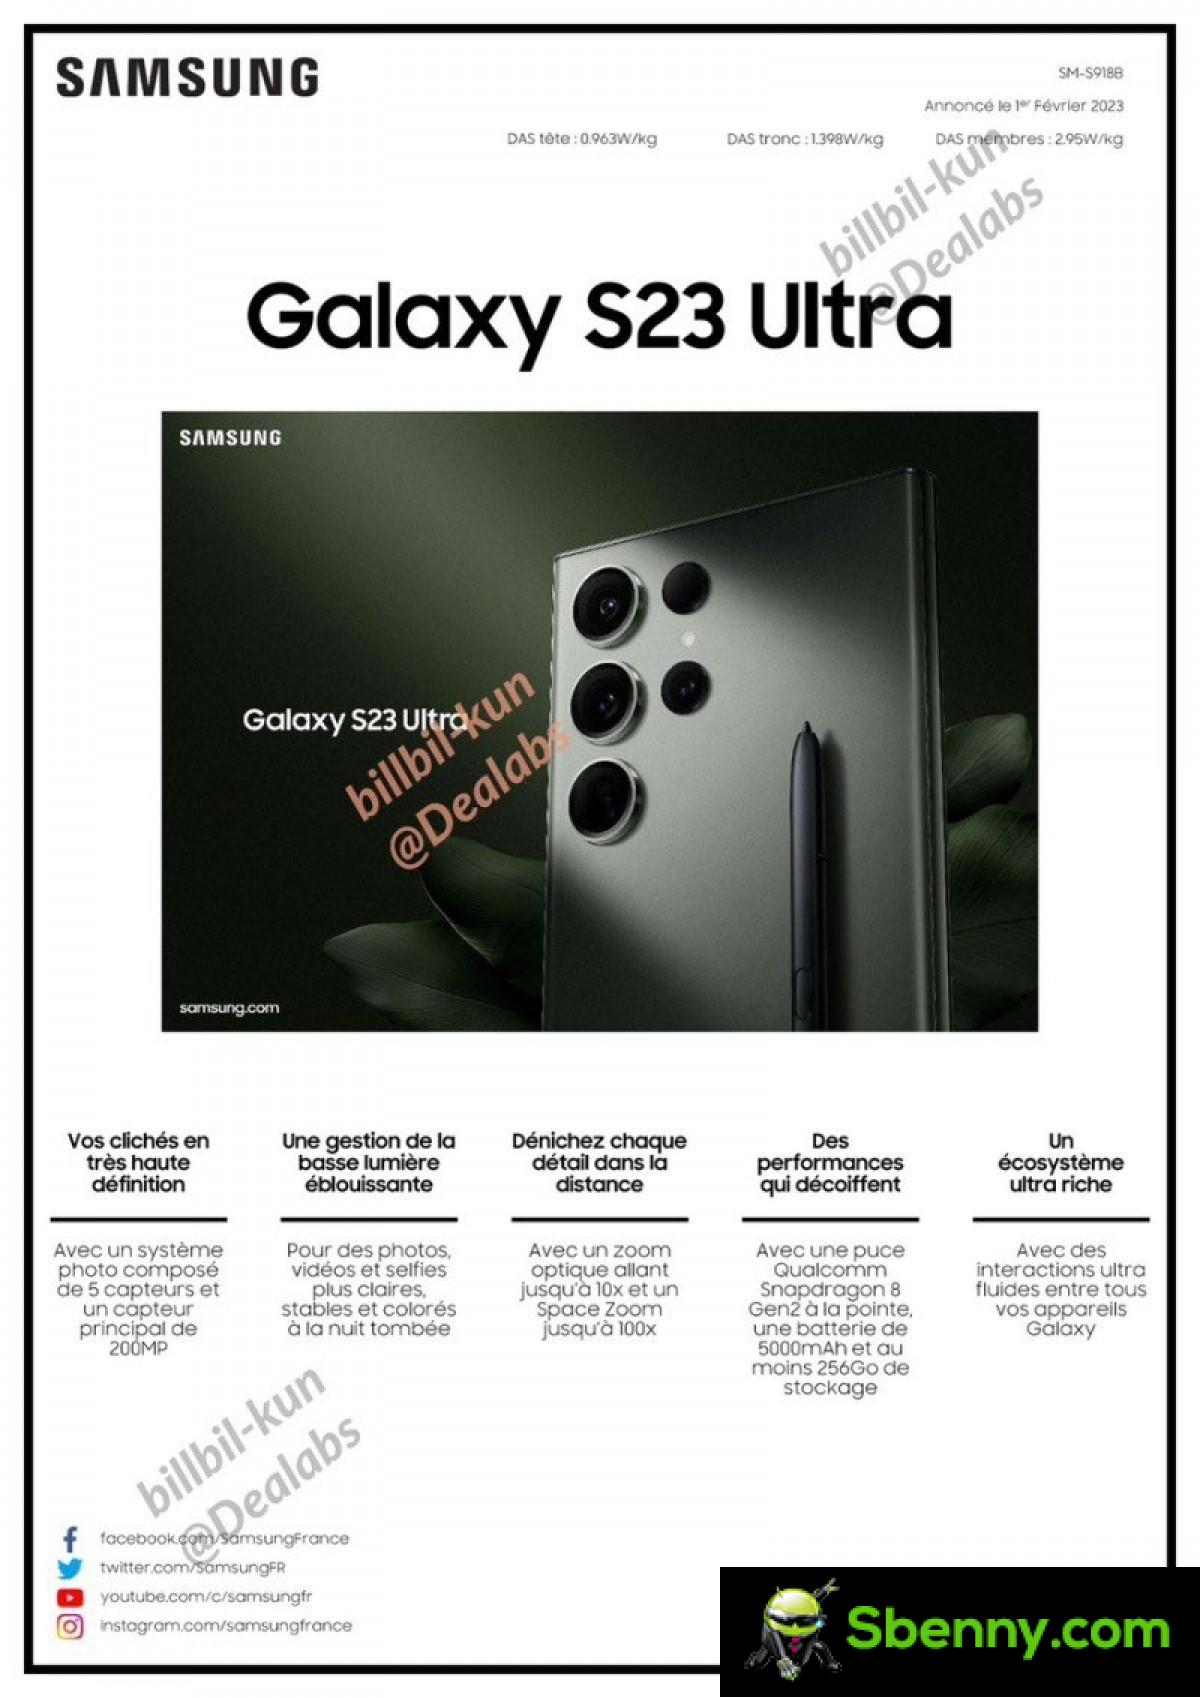 La scheda tecnica del Samsung Galaxy S23 Ultra trapela per intero